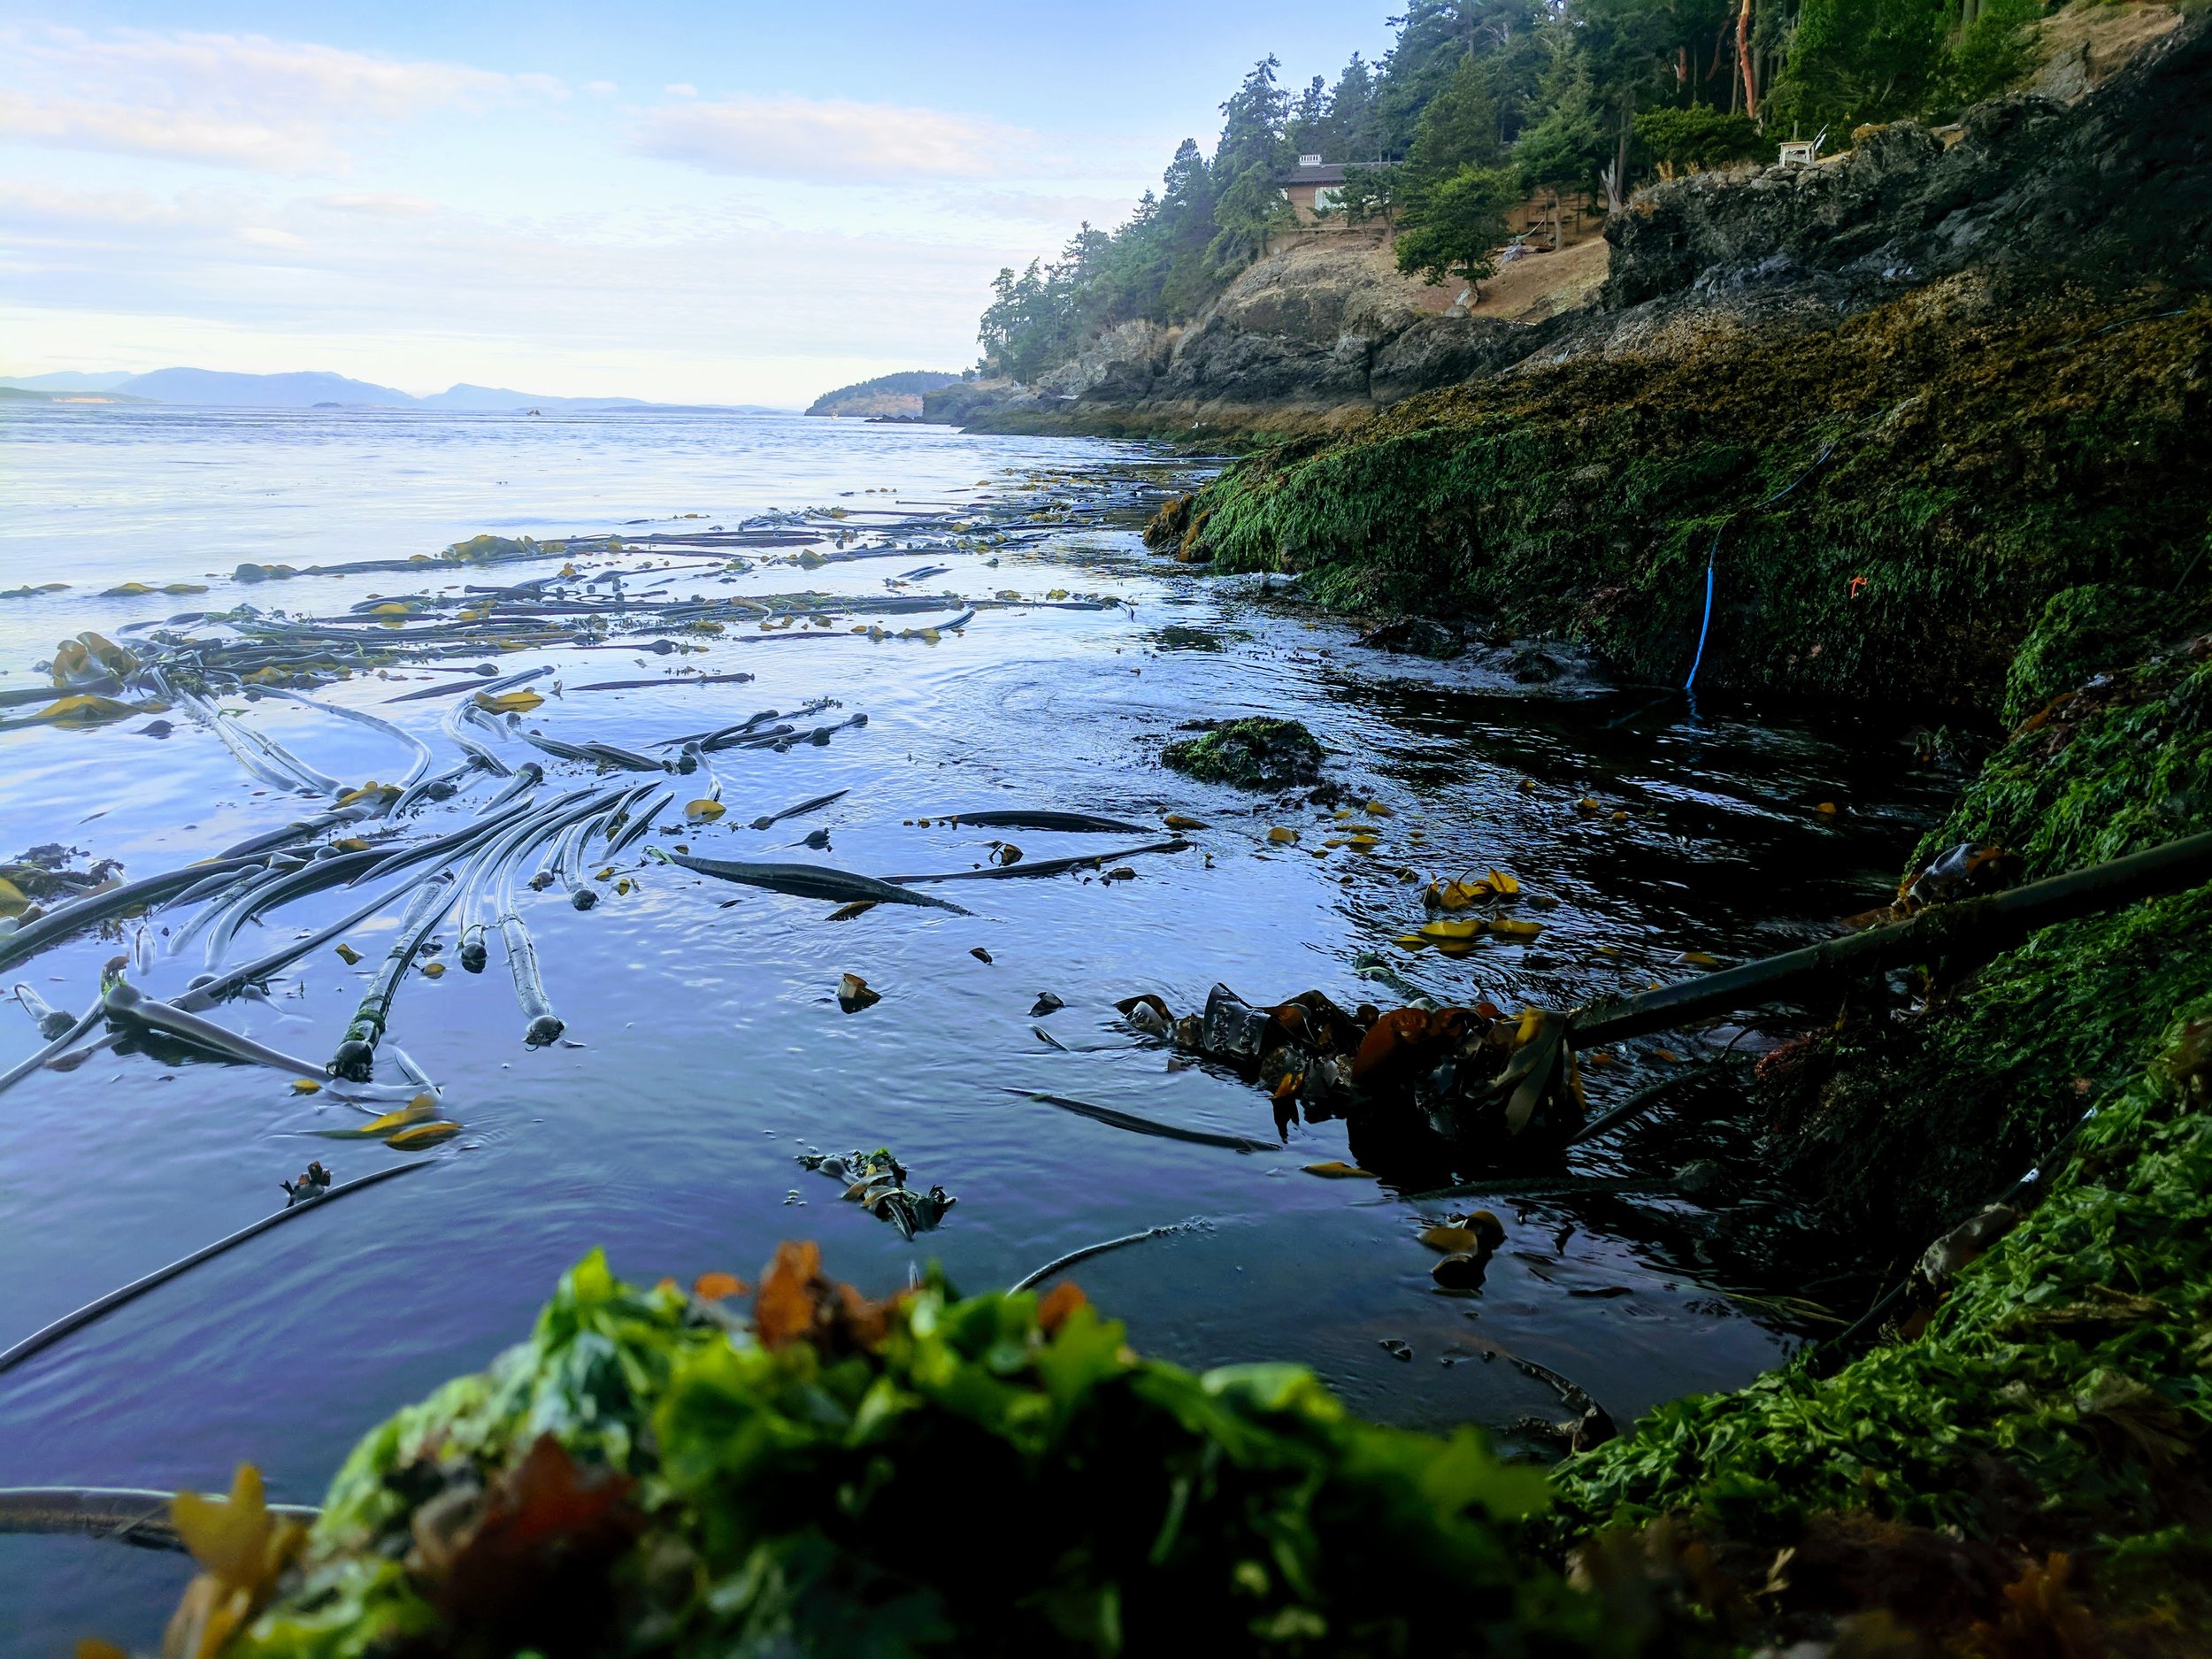 Coastal environment, photo courtesy of Scott Veirs